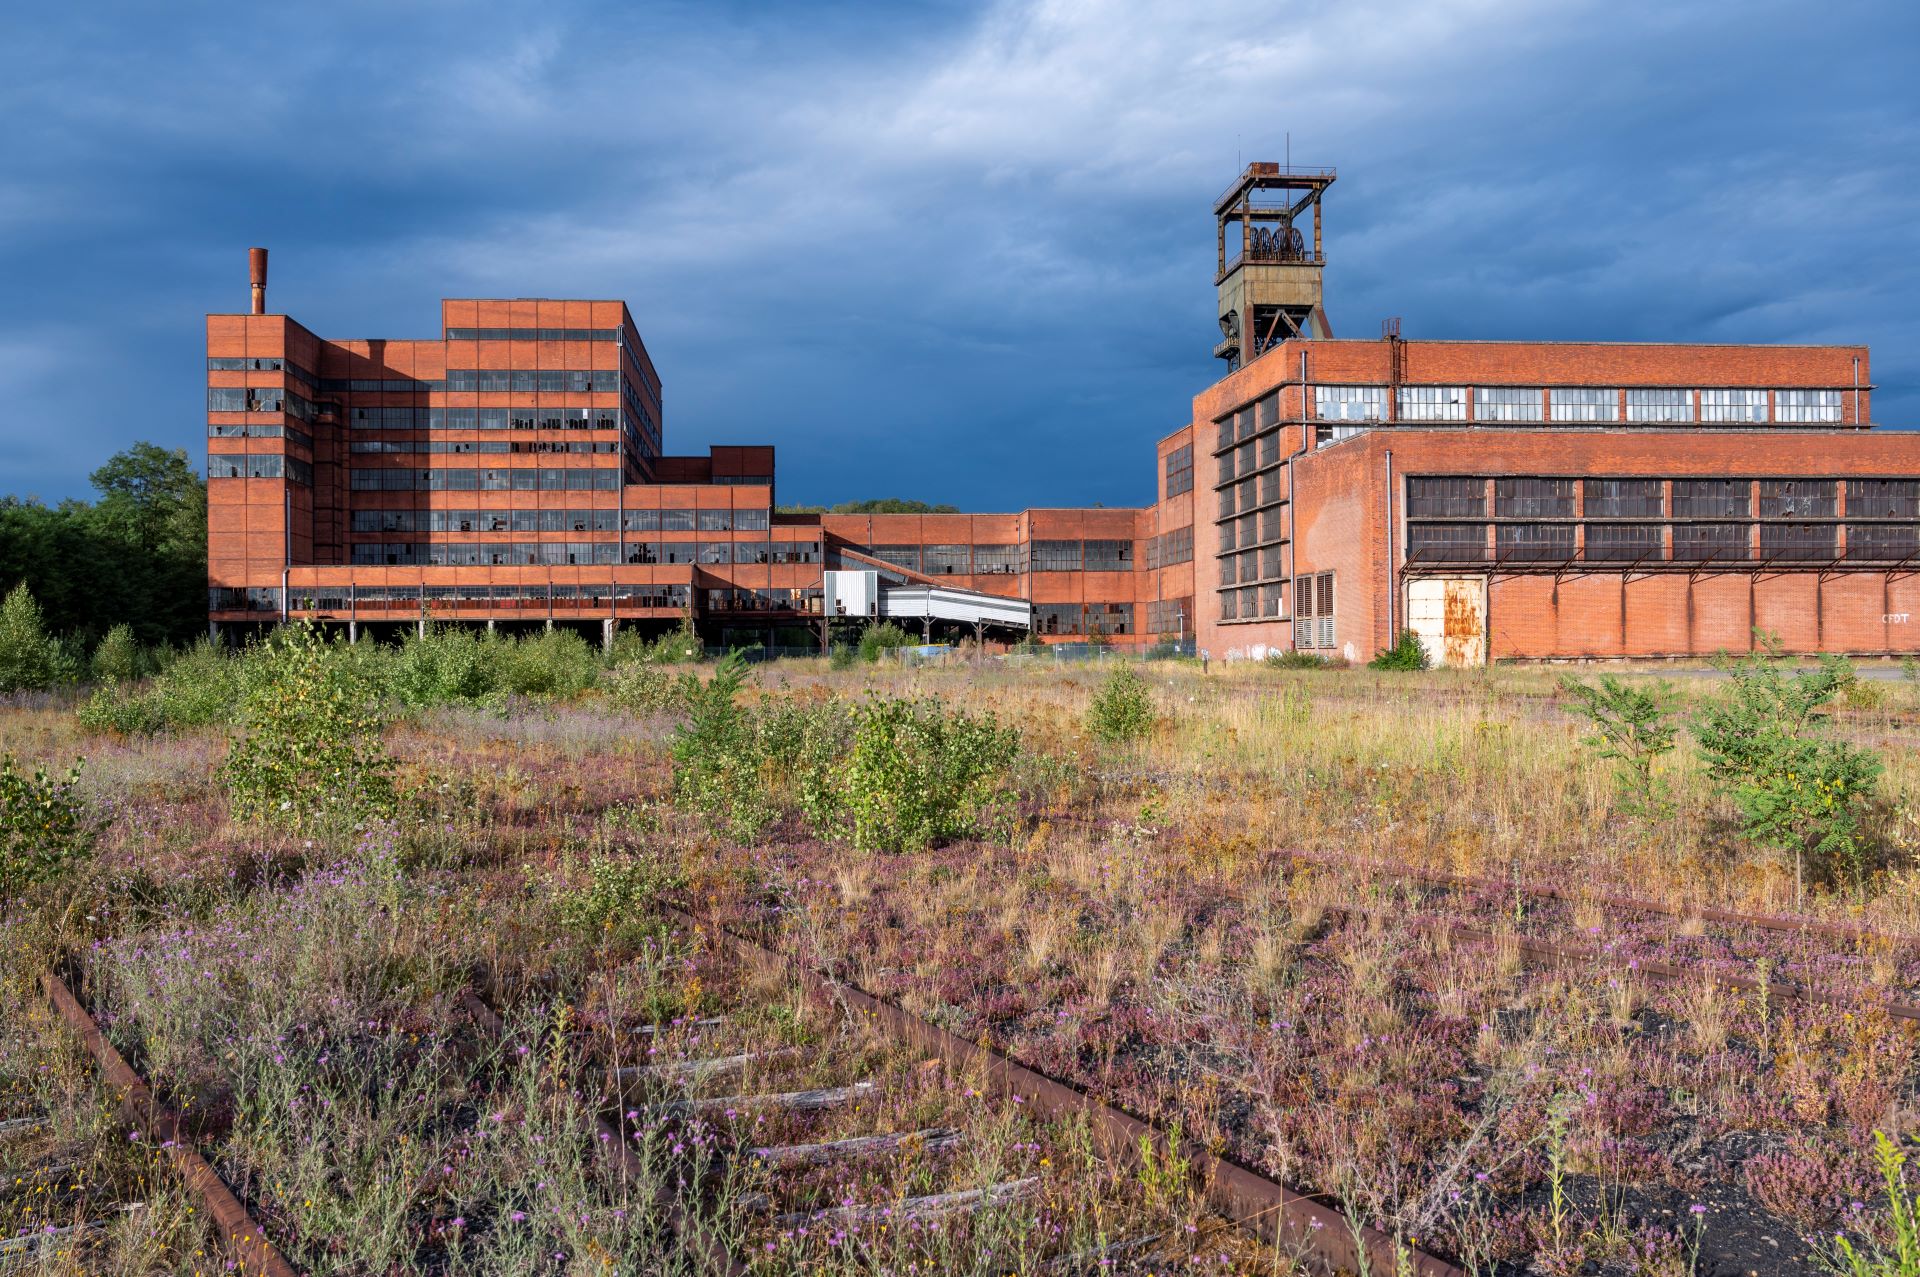 Lorsque le ciel s'assombrit et se couvre, les bâtiments de l'ancienne mine se distinguent par leur couleur rouge-brun.